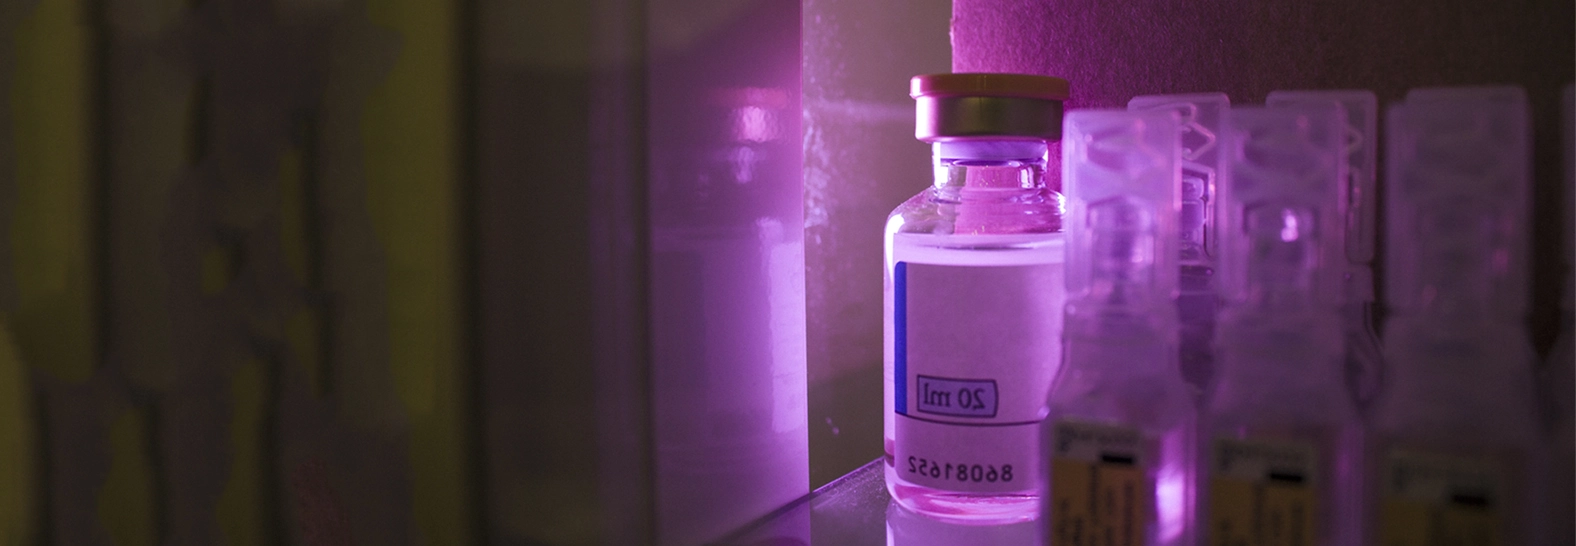 Mała butelka z płynem oświetlona fioletowym światłem LED